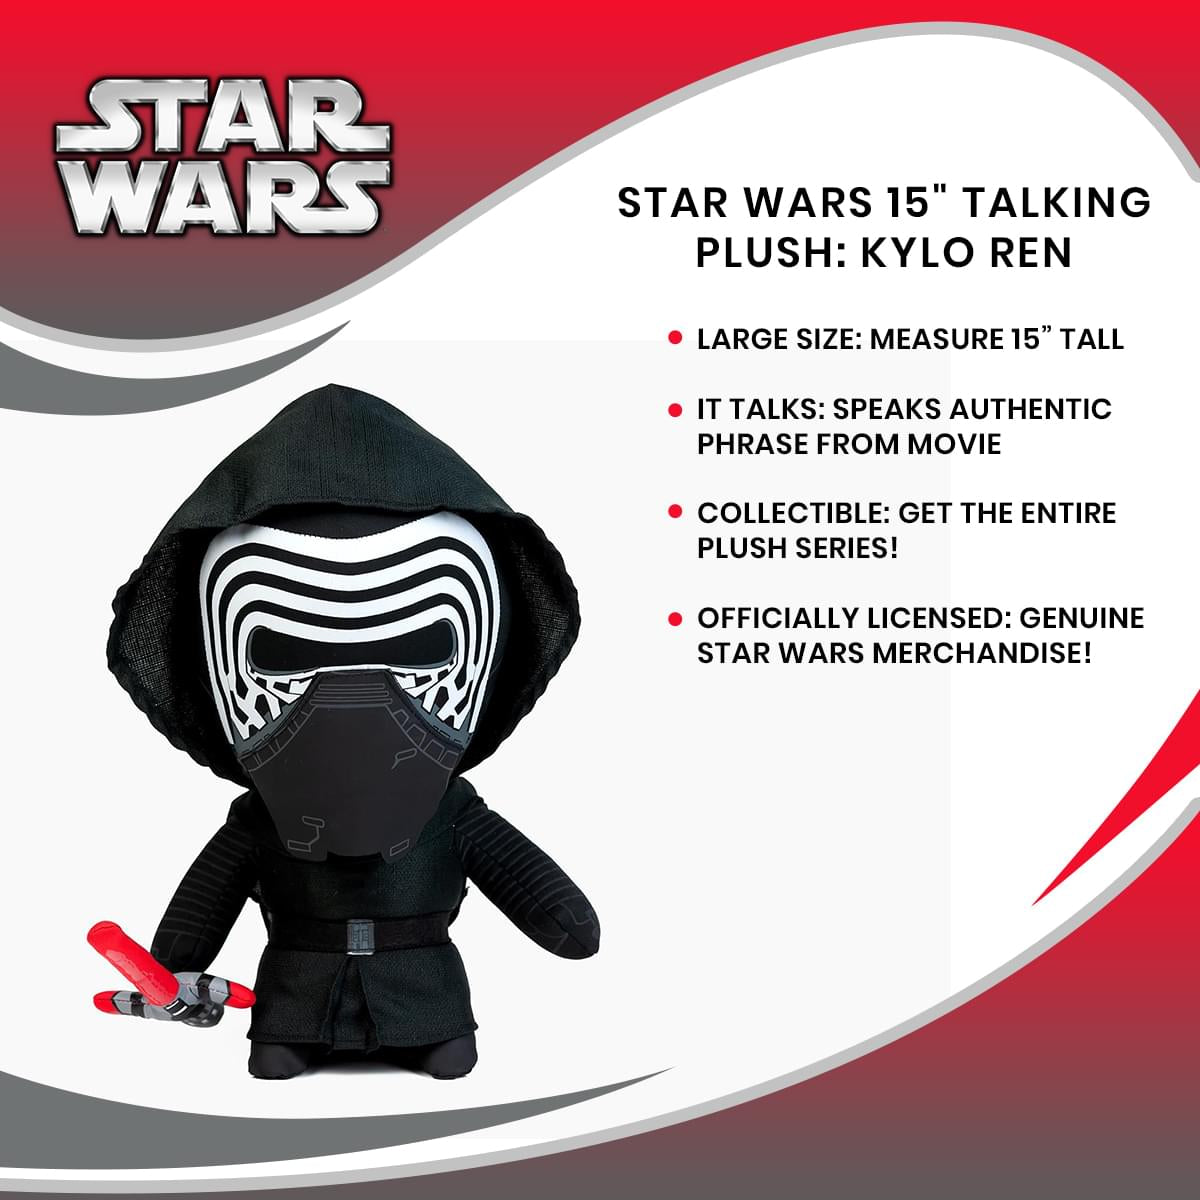 Star Wars 15" Talking Plush: Kylo Ren